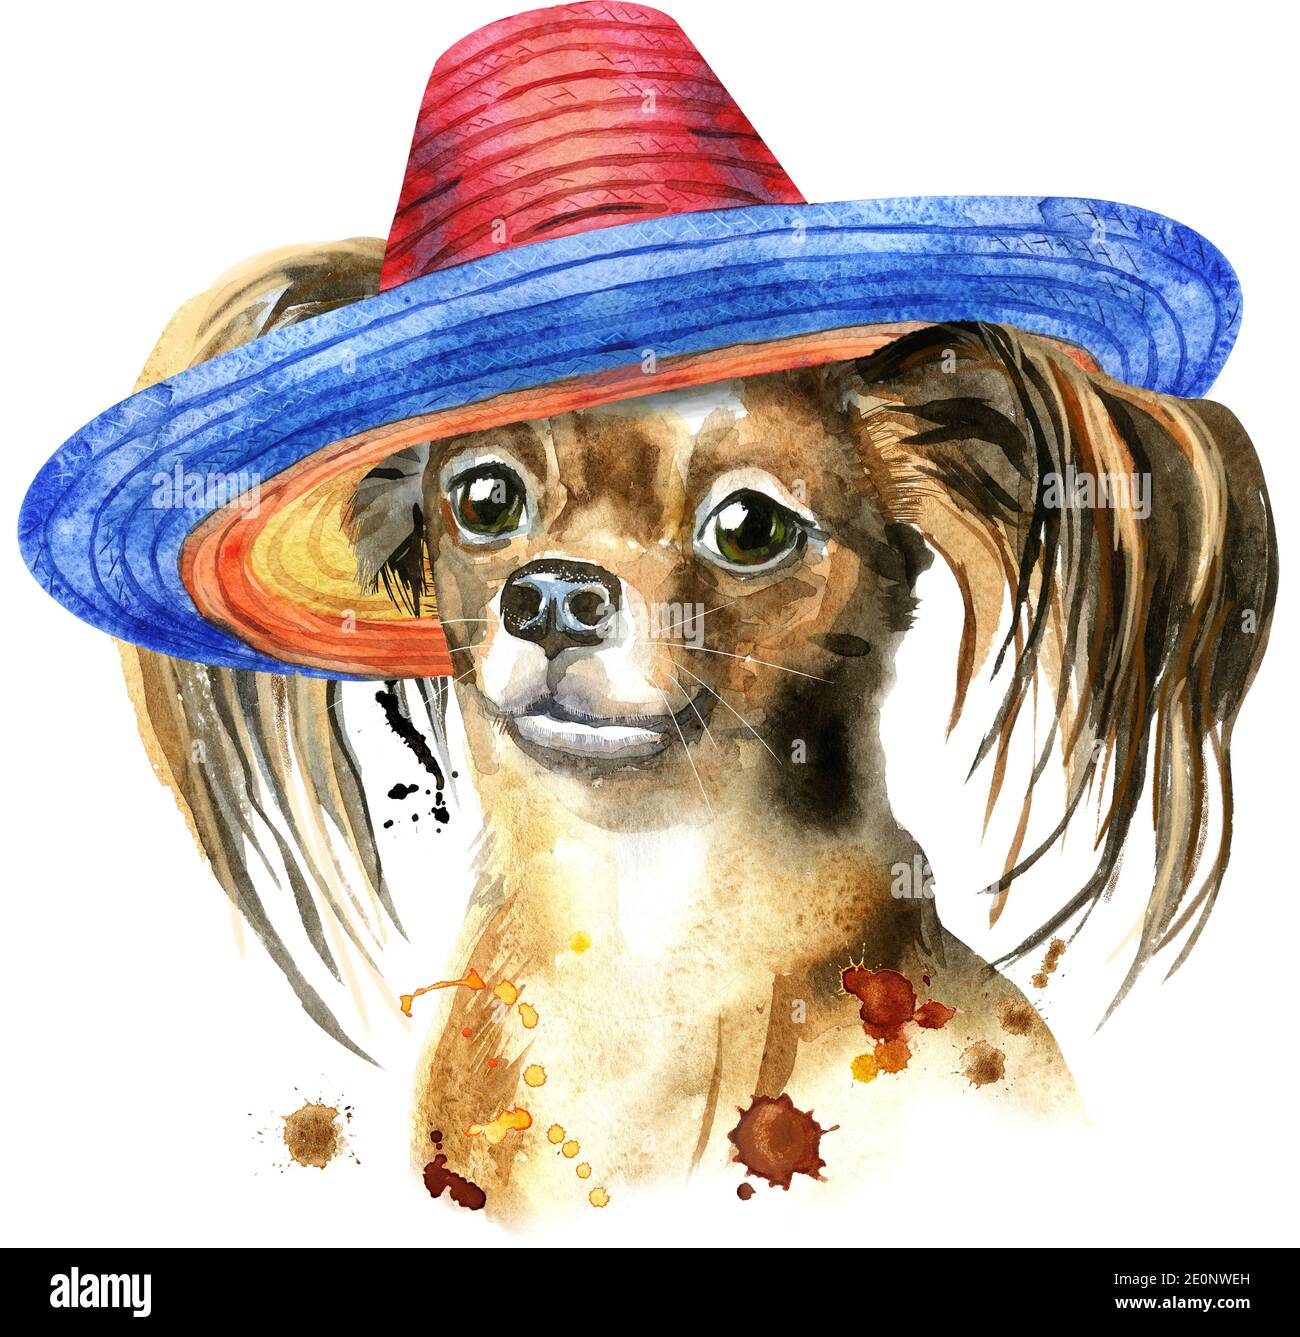 Joli chien avec chapeau marron et noeud sur le côté. Motifs pour t-shirt de chien. Aquarelle pour terrier Banque D'Images